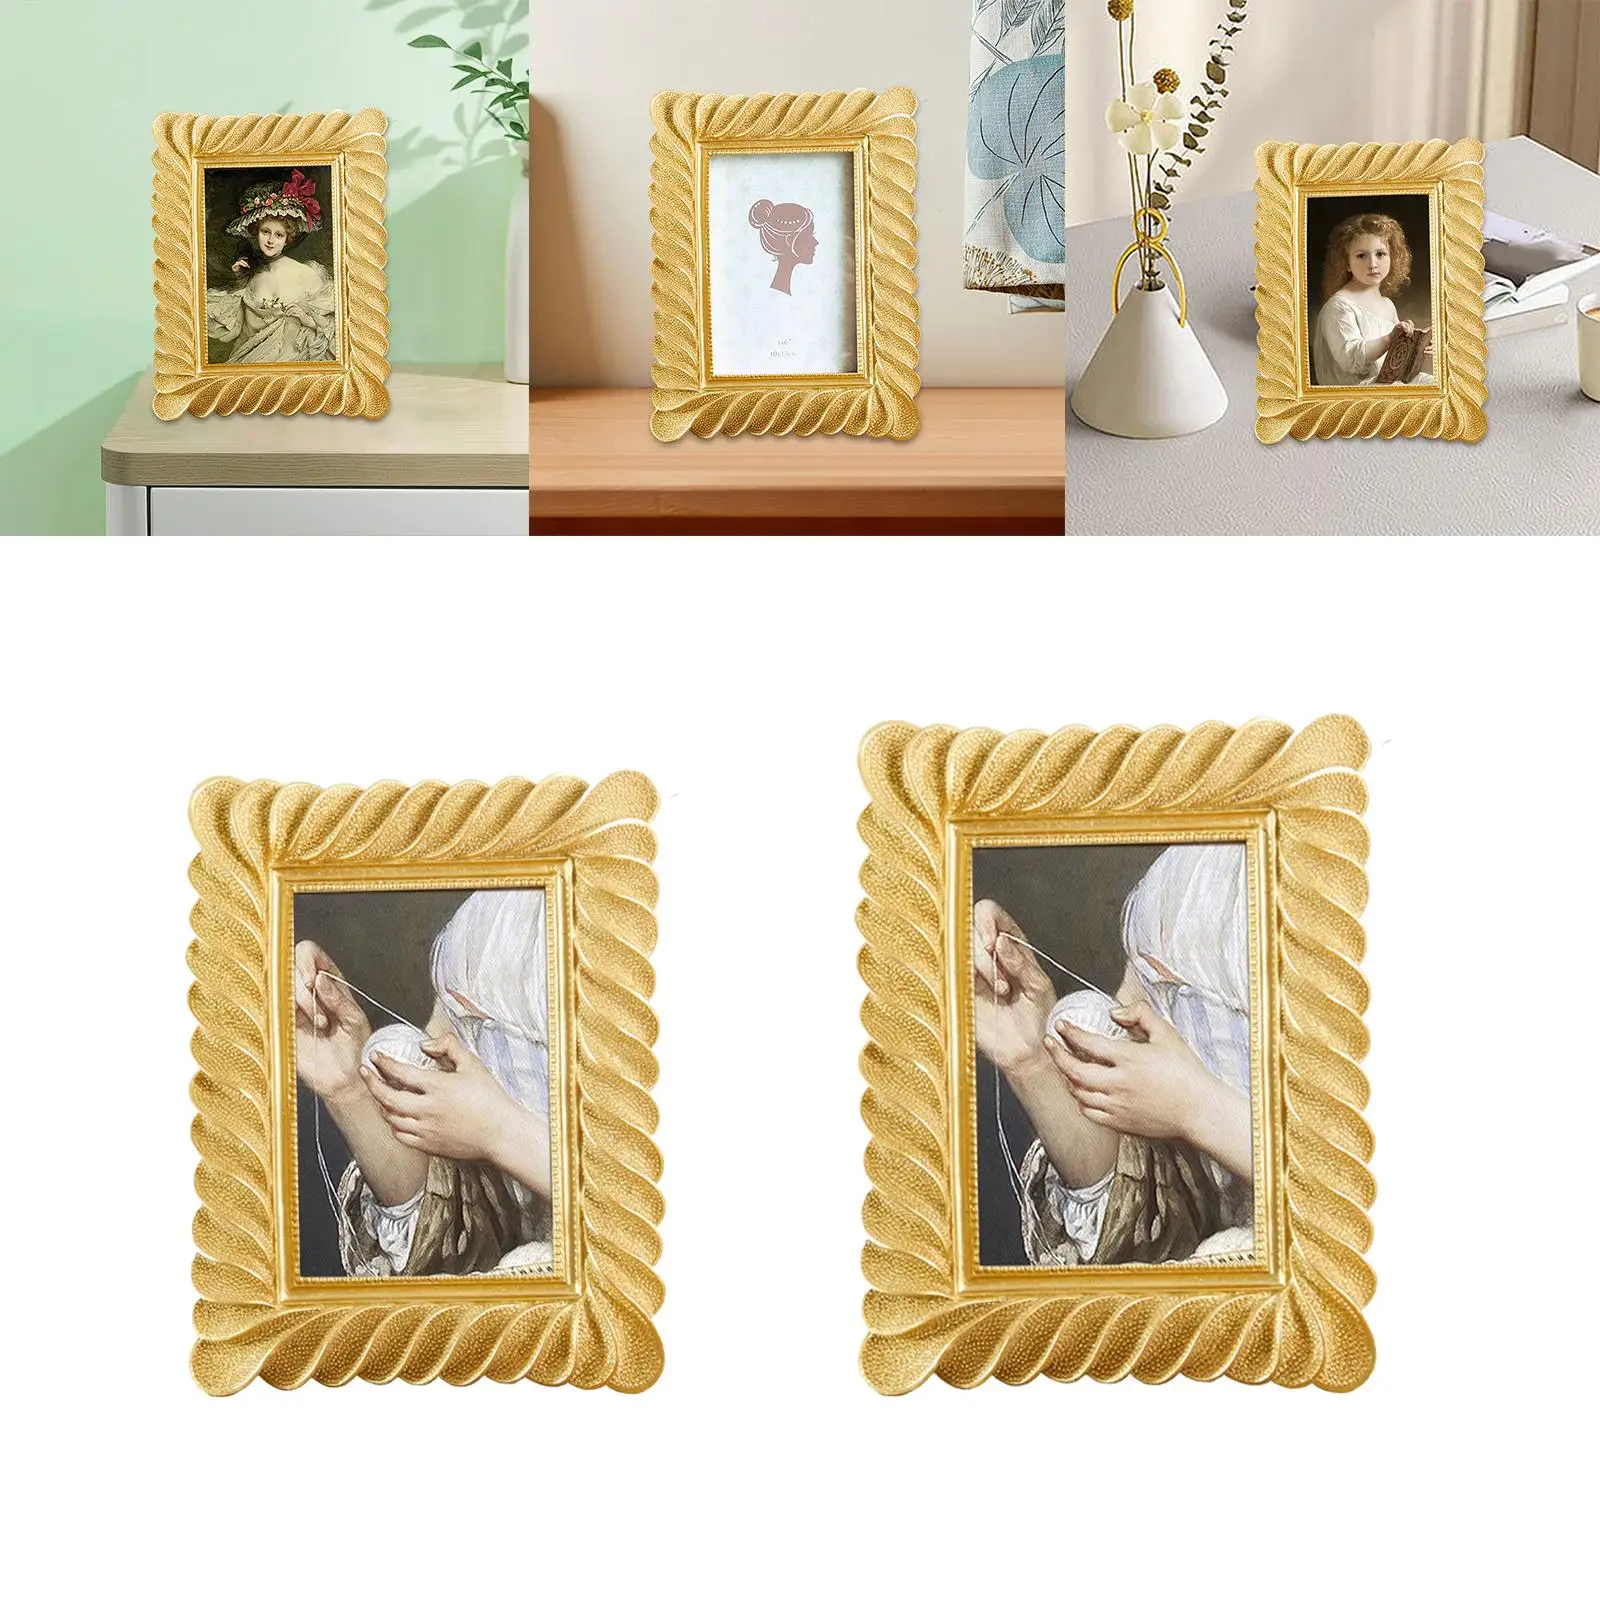 Embossed Rectangle Polyresin Photo Frame Elegant Photo Gallery Art Desktop European Style Picture Holder for Living Room Bedroom